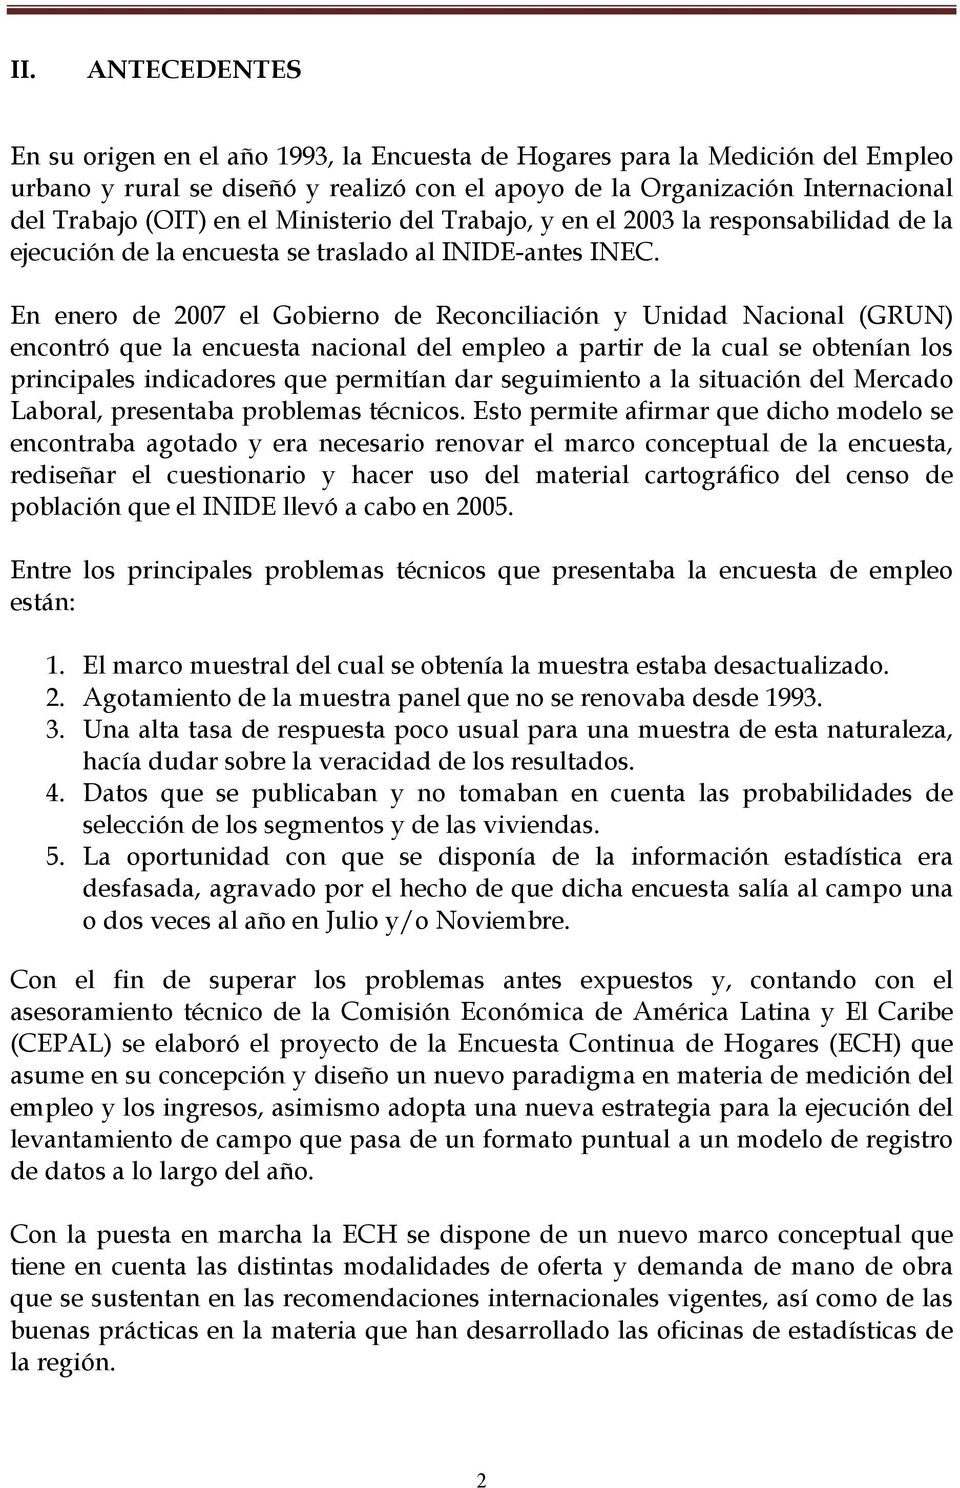 En enero de 2007 el Gobierno de Reconciliación y Unidad Nacional (GRUN) encontró que la encuesta nacional del empleo a partir de la cual se obtenían los principales indicadores que permitían dar